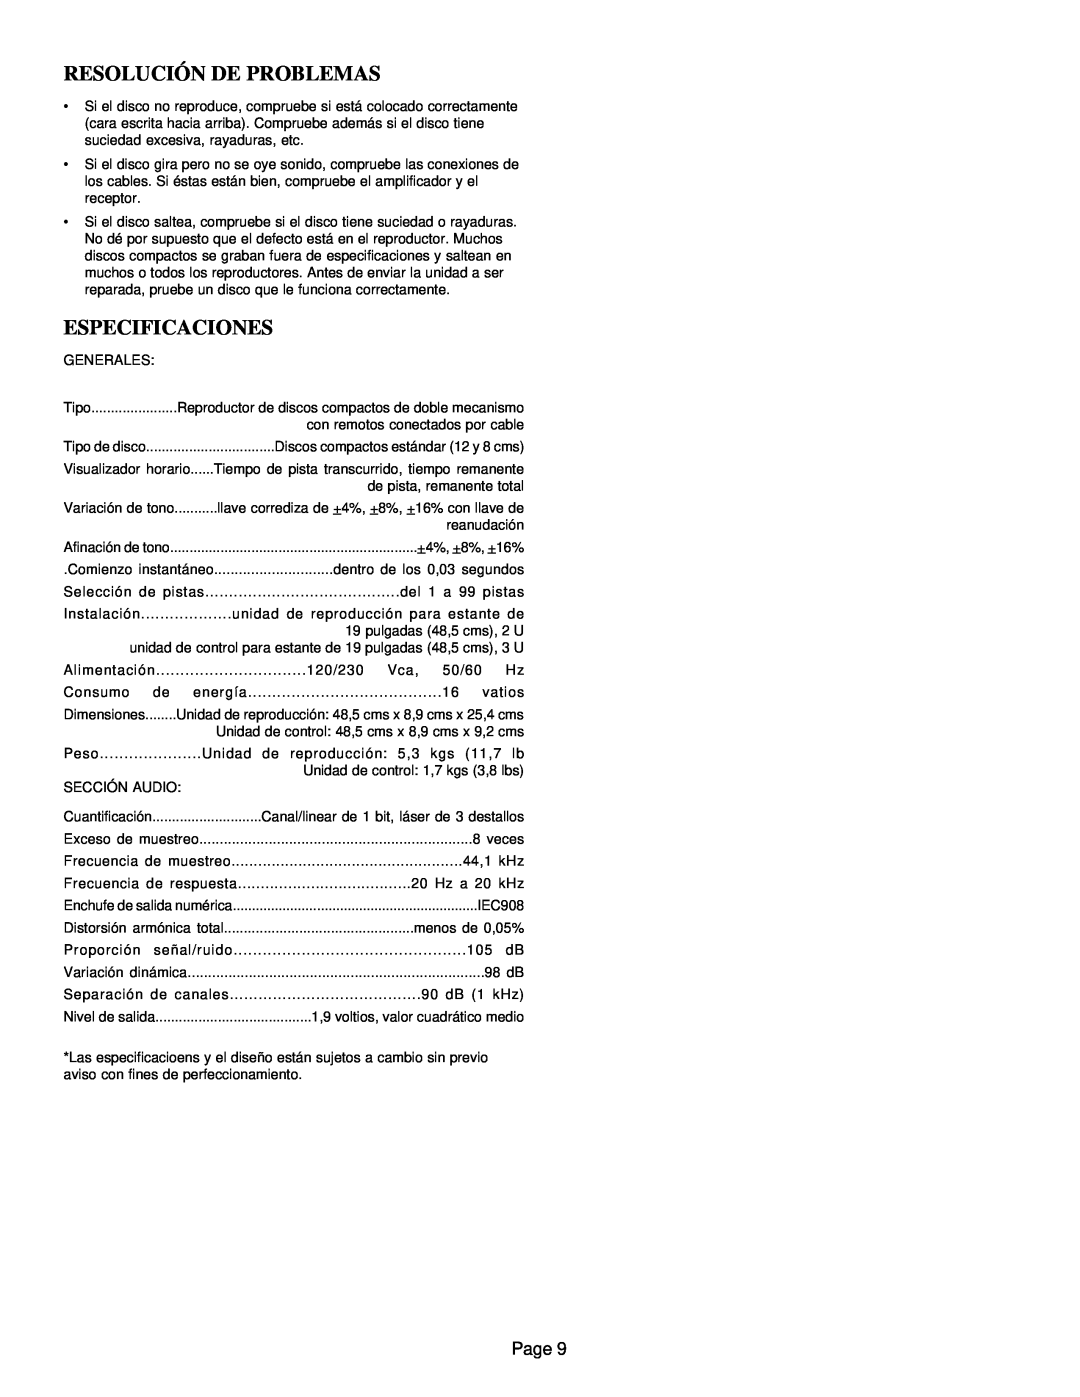 Gemini CD-9800 manual Resolución De Problemas, Especificaciones, Page 